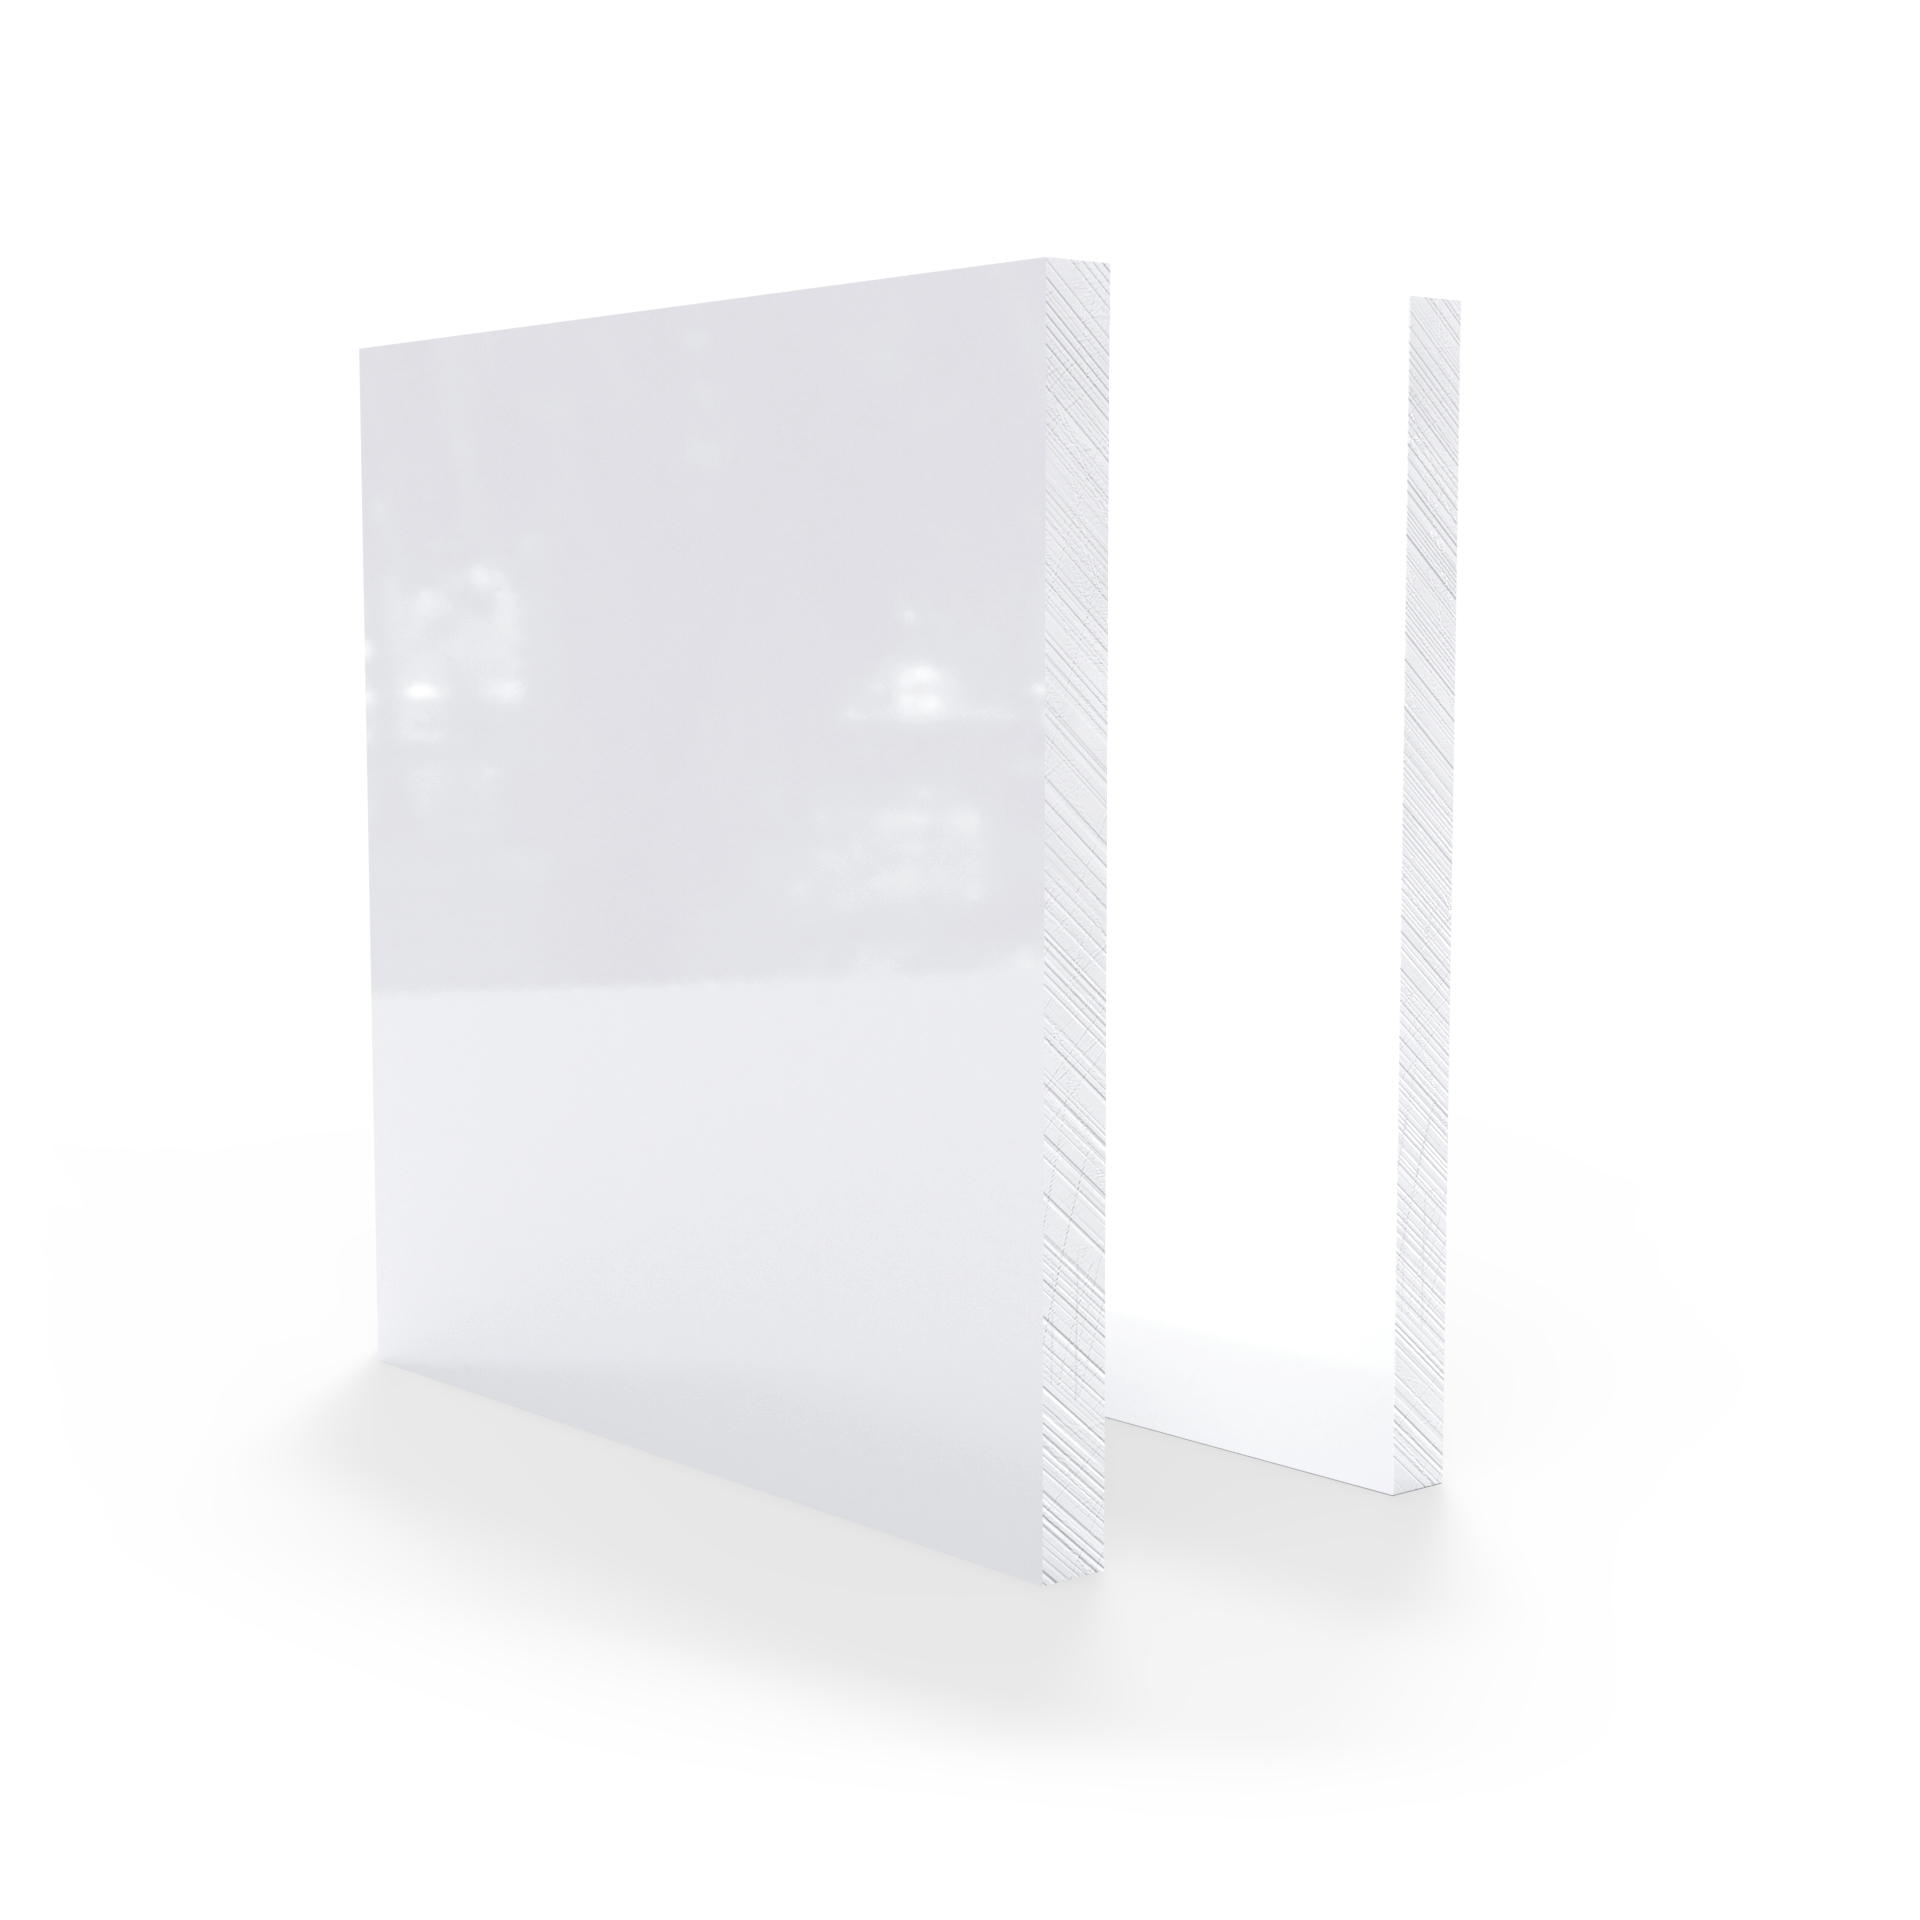 Plexiglas weiß 6 mm - Plexideal